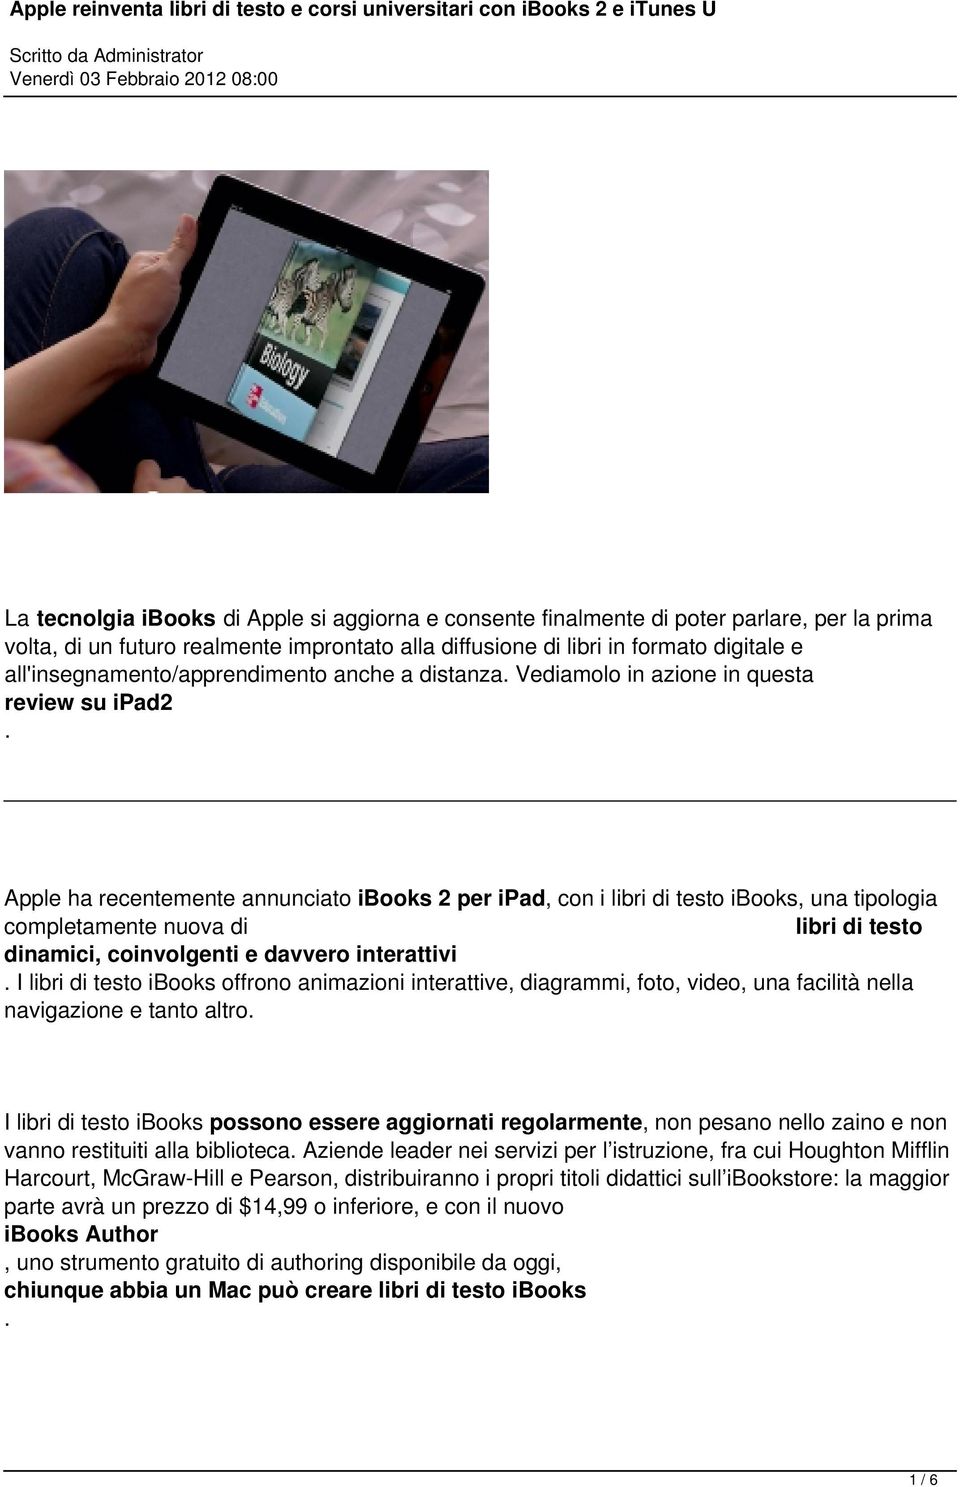 Apple ha recentemente annunciato ibooks 2 per ipad, con i libri di testo ibooks, una tipologia completamente nuova di libri di testo dinamici, coinvolgenti e davvero interattivi.